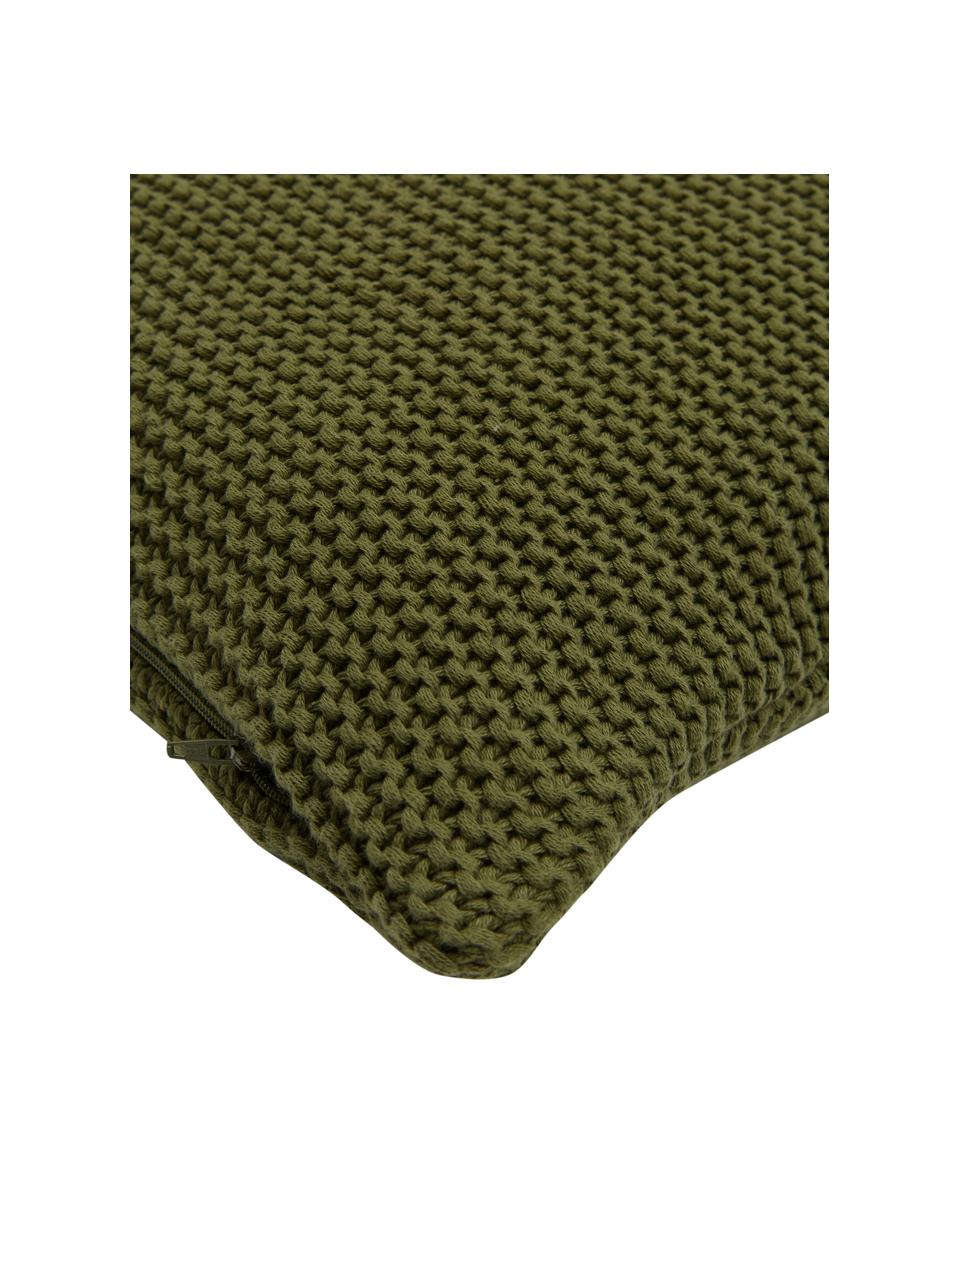 Copricuscino a maglia in cotone organico Adalyn, 100% cotone organico certificato GOTS, Verde, Larg. 50 x Lung. 50 cm